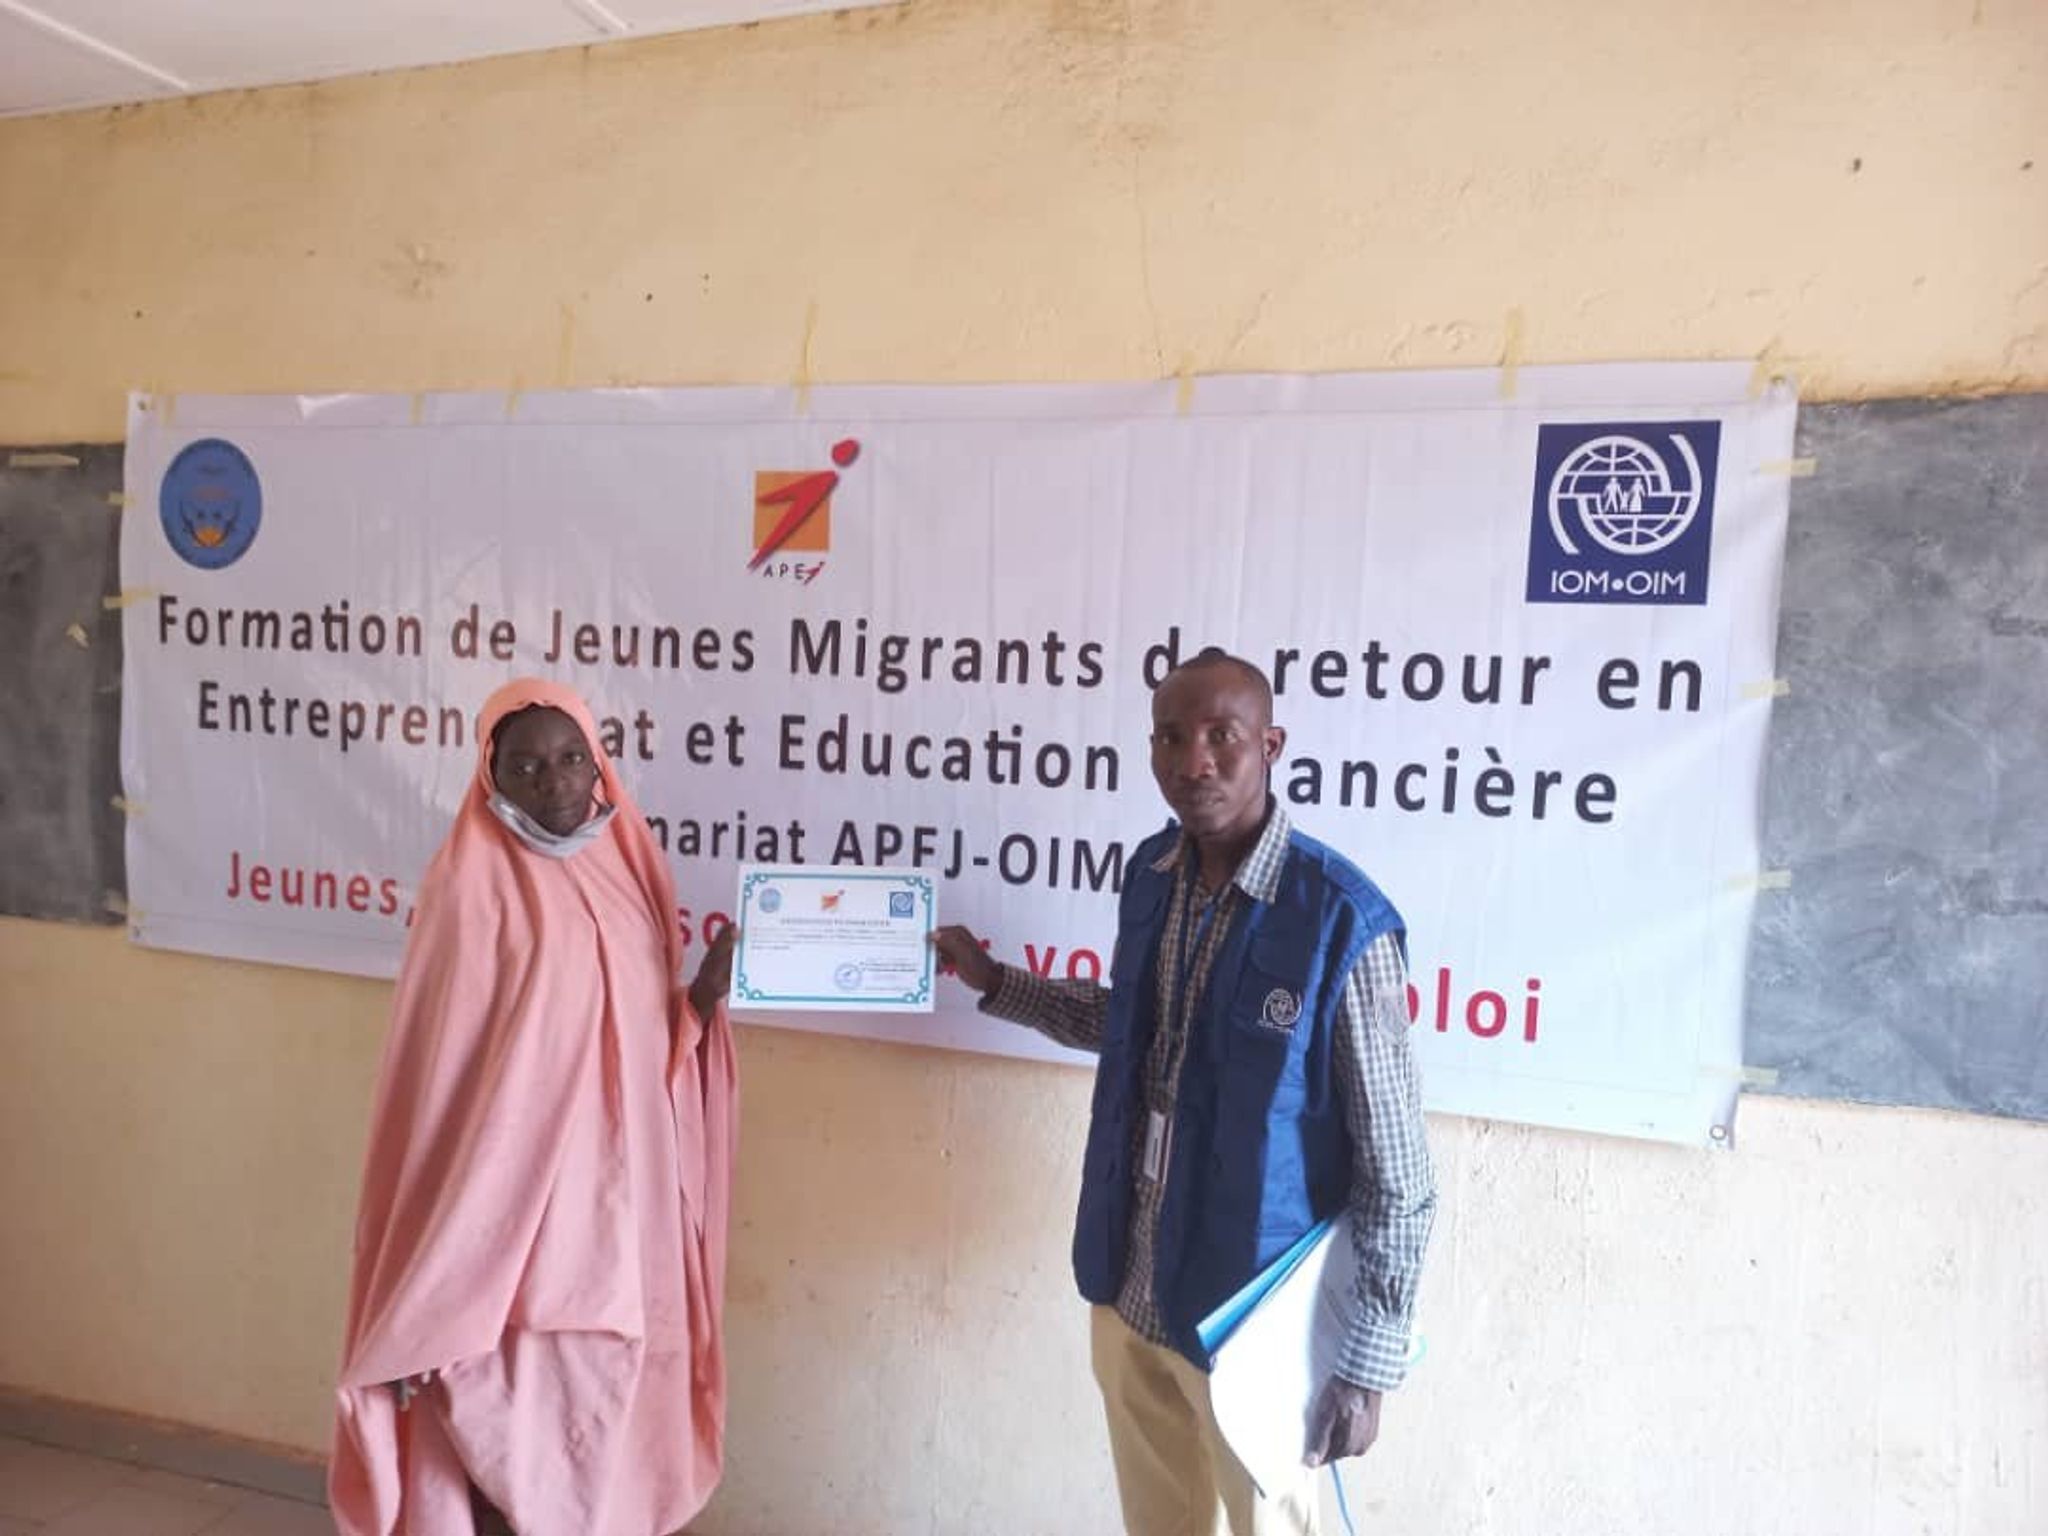 POLYCOPIÉ - Au Mali, 18 migrants de retour, dont dix femmes, ont reçu une formation à l'entrepreneuriat et à l'éducation financière afin de favoriser leur autonomie économique. Foto: OIM/Photo de presse/dpa